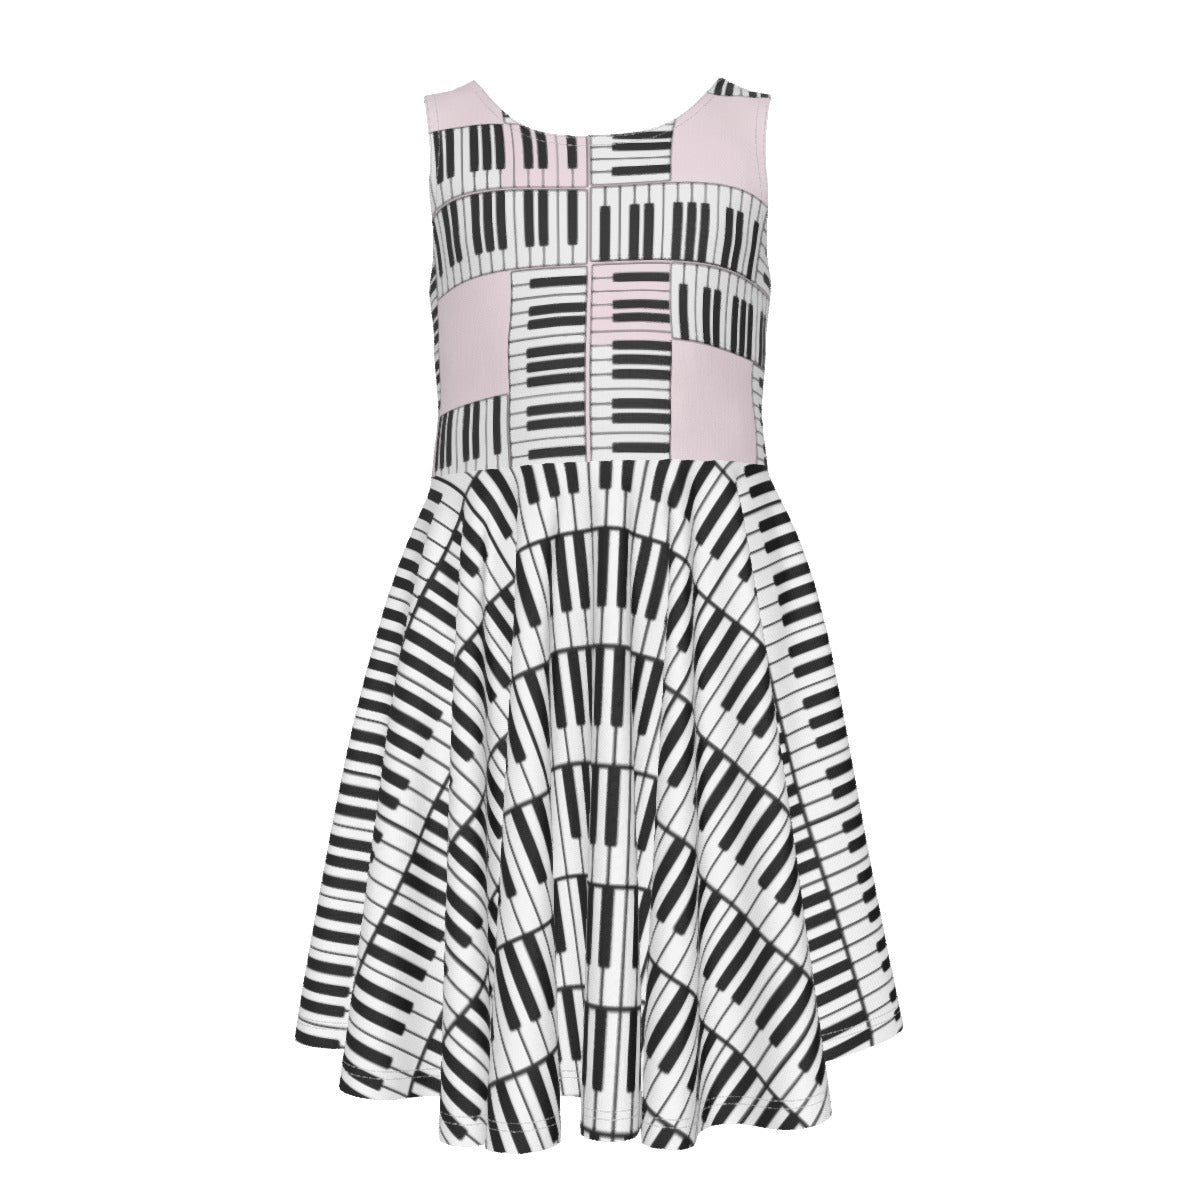 Liberace Piano Key Pattern Sleeveless Dress